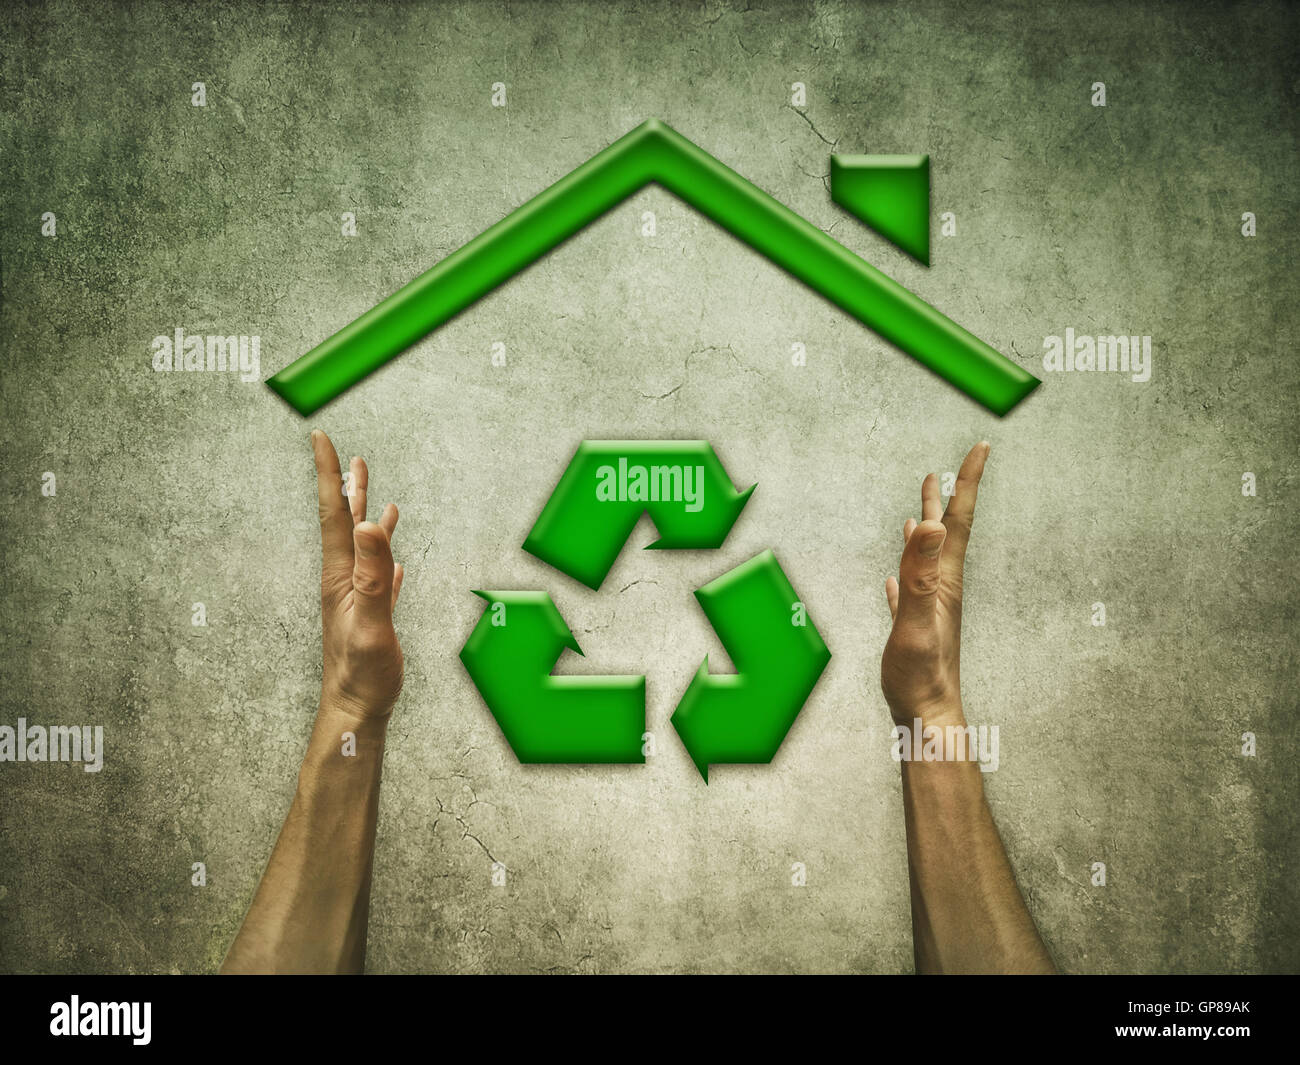 Green Eco House avec symbole recyclage durable de système écologique et matériaux renouvelables. Image conceptuelle à propos de responsa Banque D'Images